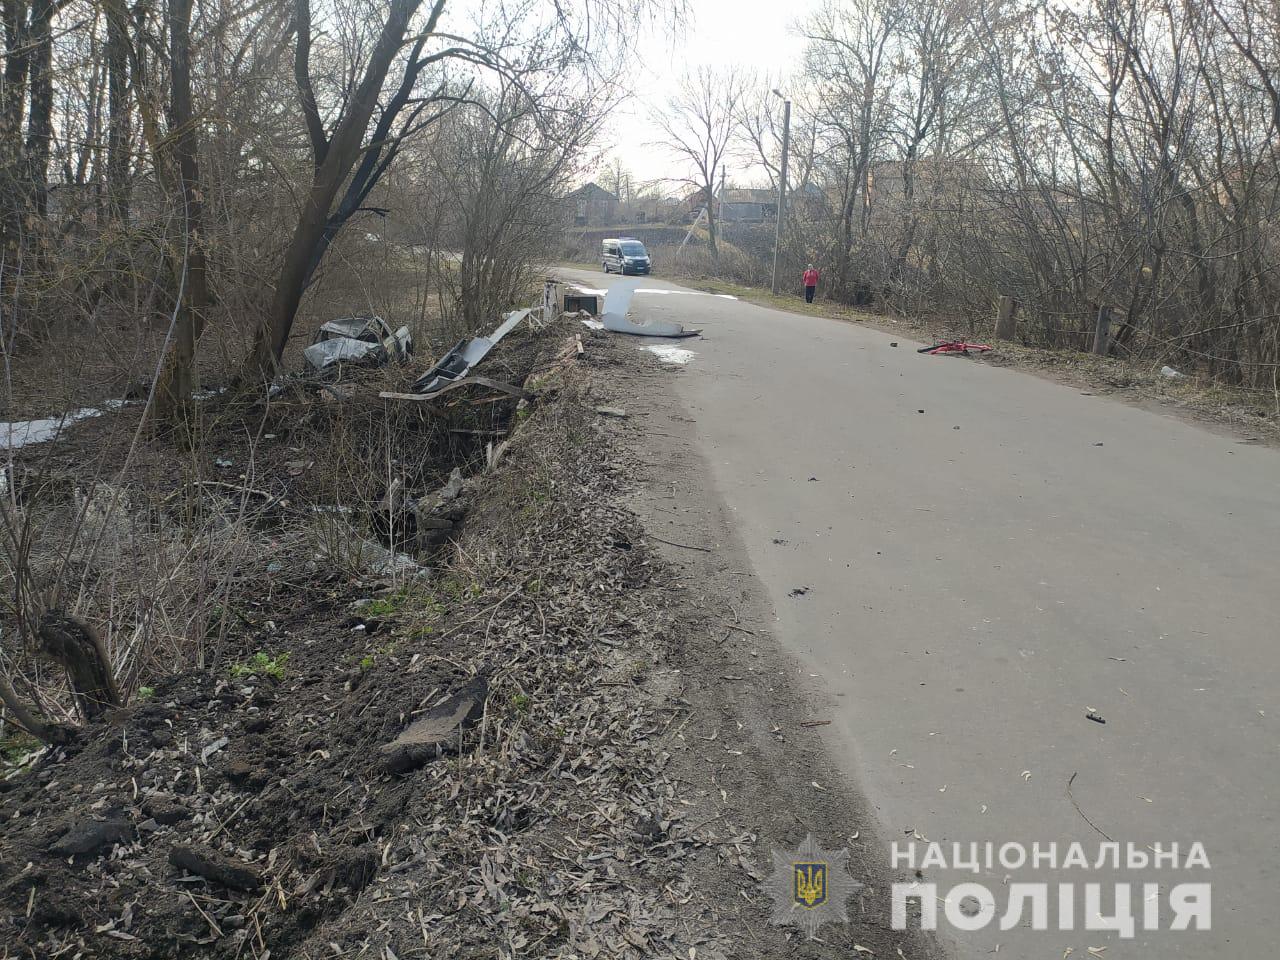 Пьяный водитель сбил насмерть двух мальчиков в Винницкой области, его авто загорелось, фото — Нацполиция